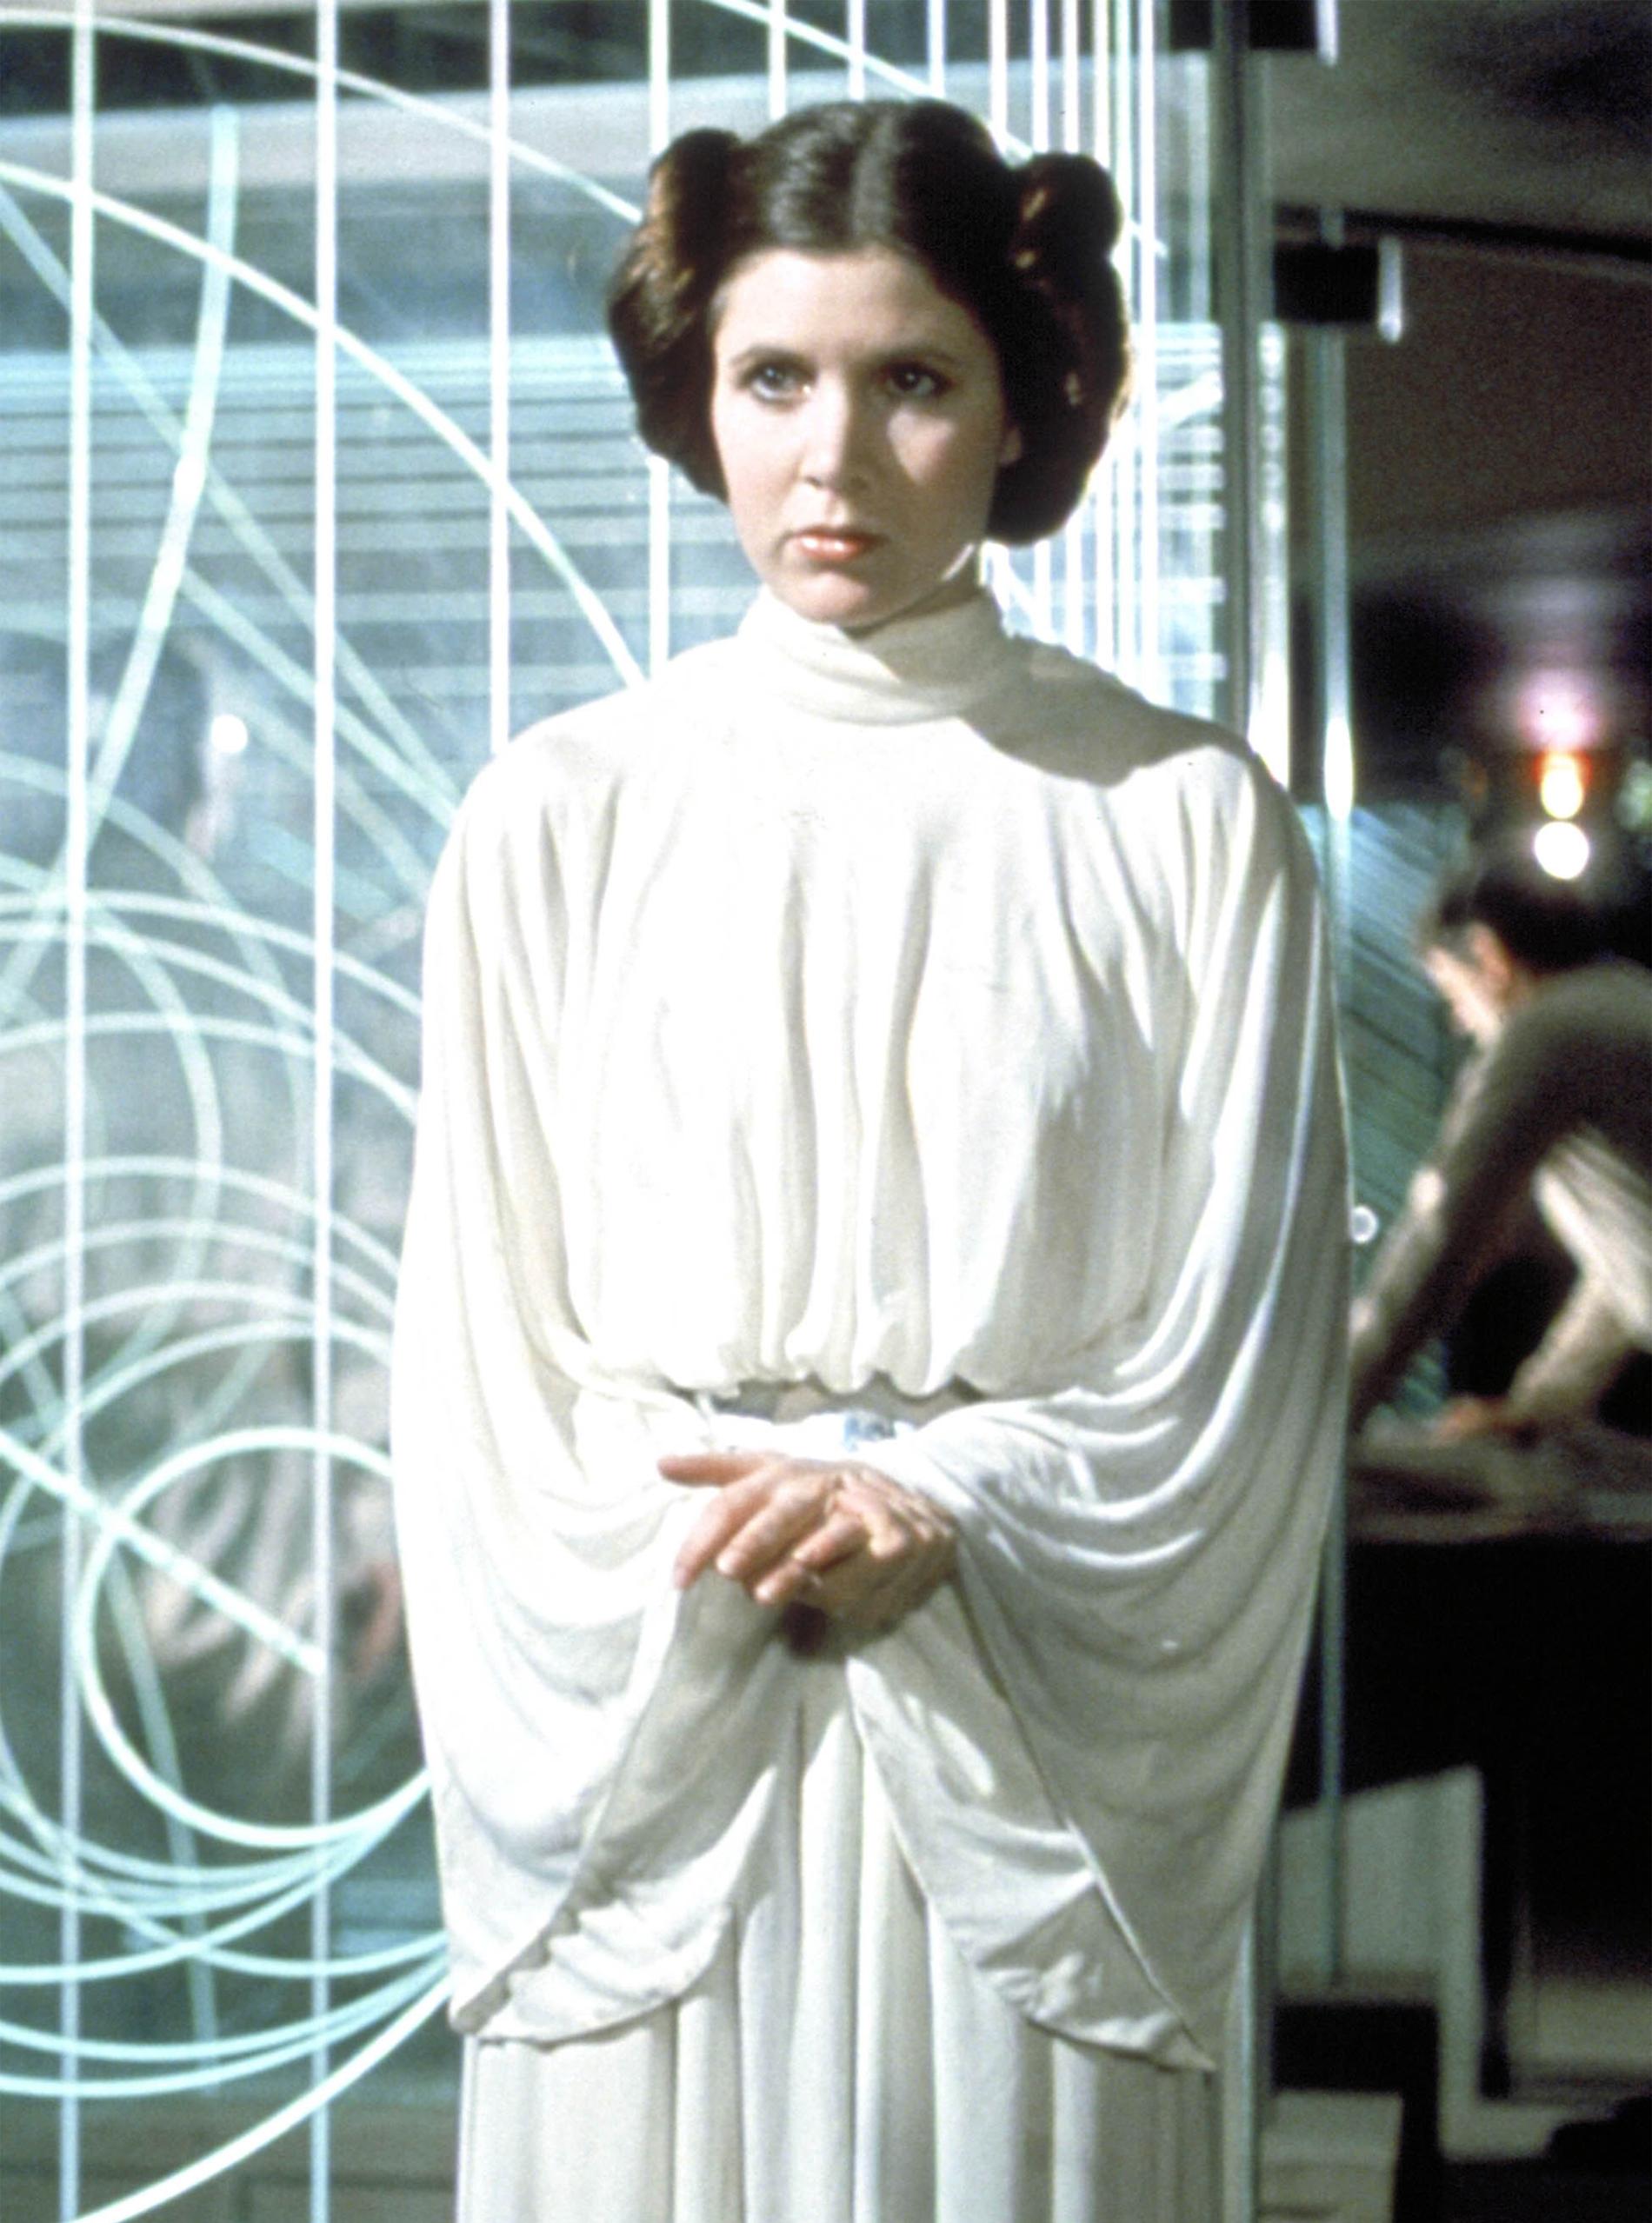 Originalet, med Carrie Fisher i rollen som prinsessan Leia.